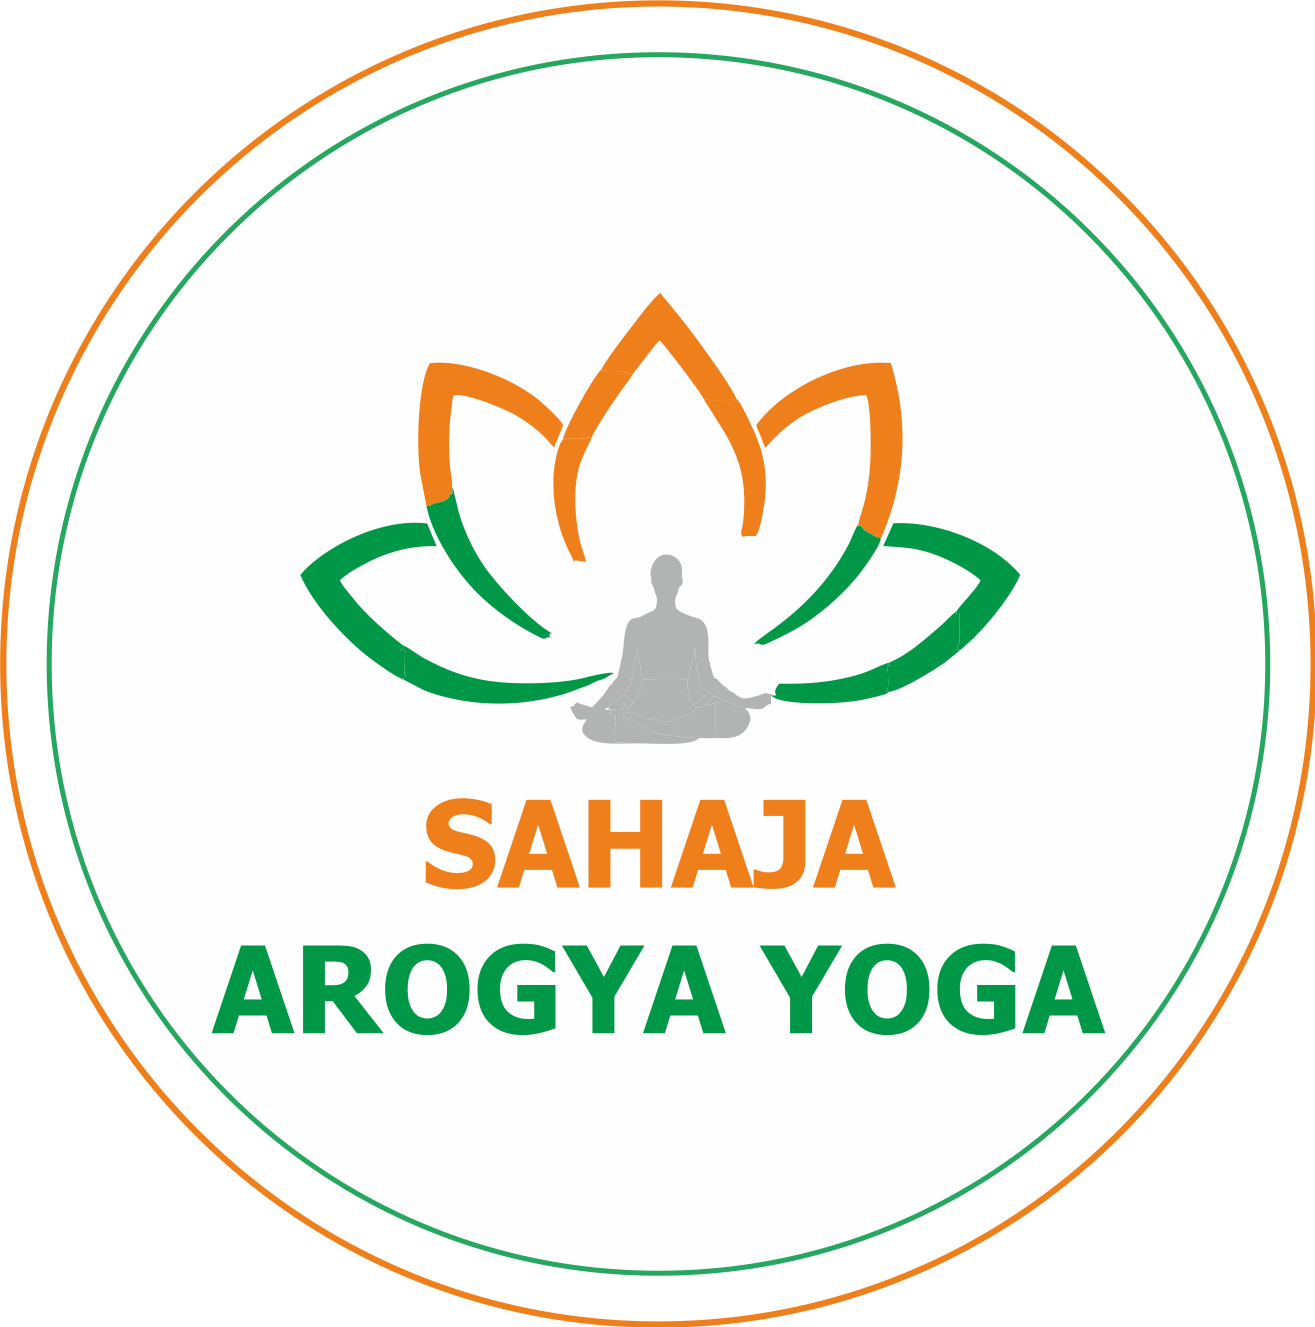 Sahaja Arogya Yoga